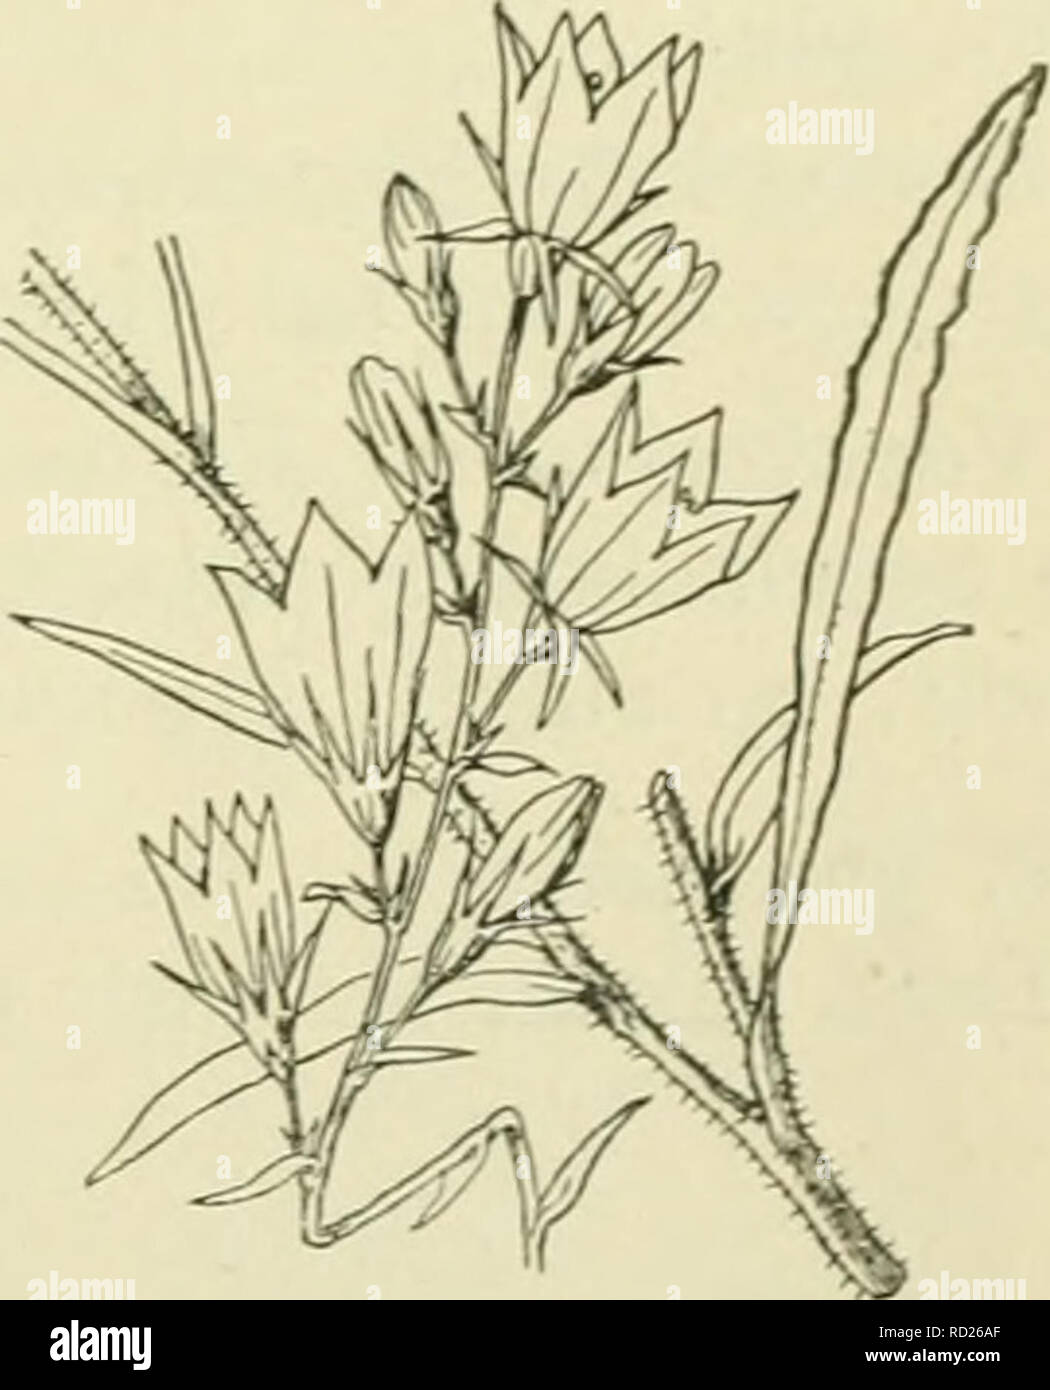 wang pakket longontsteking De flora van Nederland. Plants. Campanula patuia Fig. 357. zeldzaam  gevonden en waarschijnlijk was zij op die vindplaatsen steeds een  verwilderde sierplant. C patuia') L. Weideklokjc (fin. 357). Deze plant  heeft